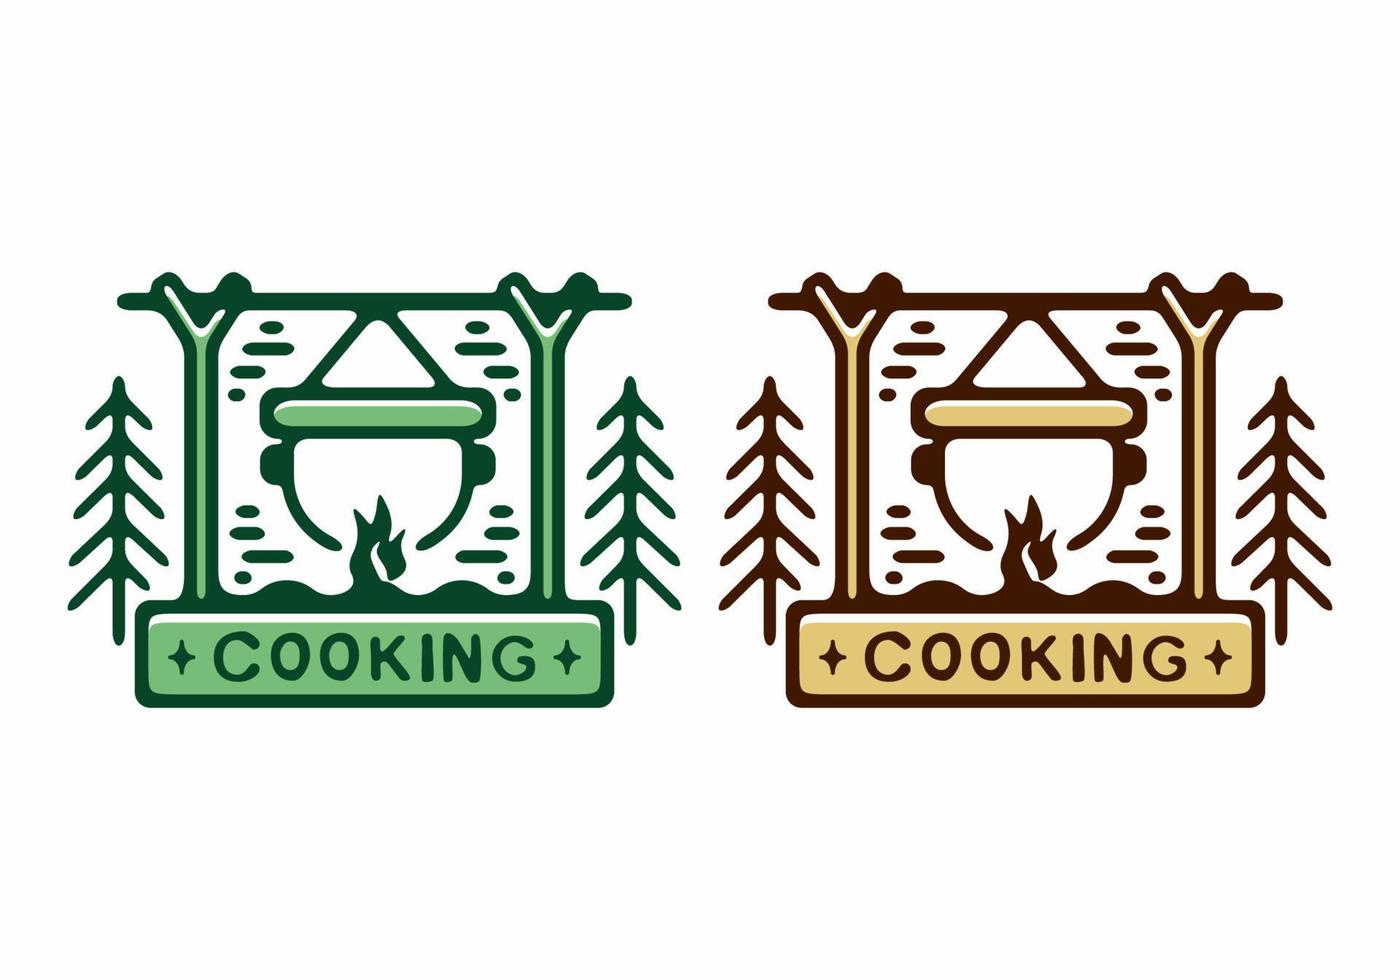 cor marrom e verde da ilustração de distintivo de culinária vetor